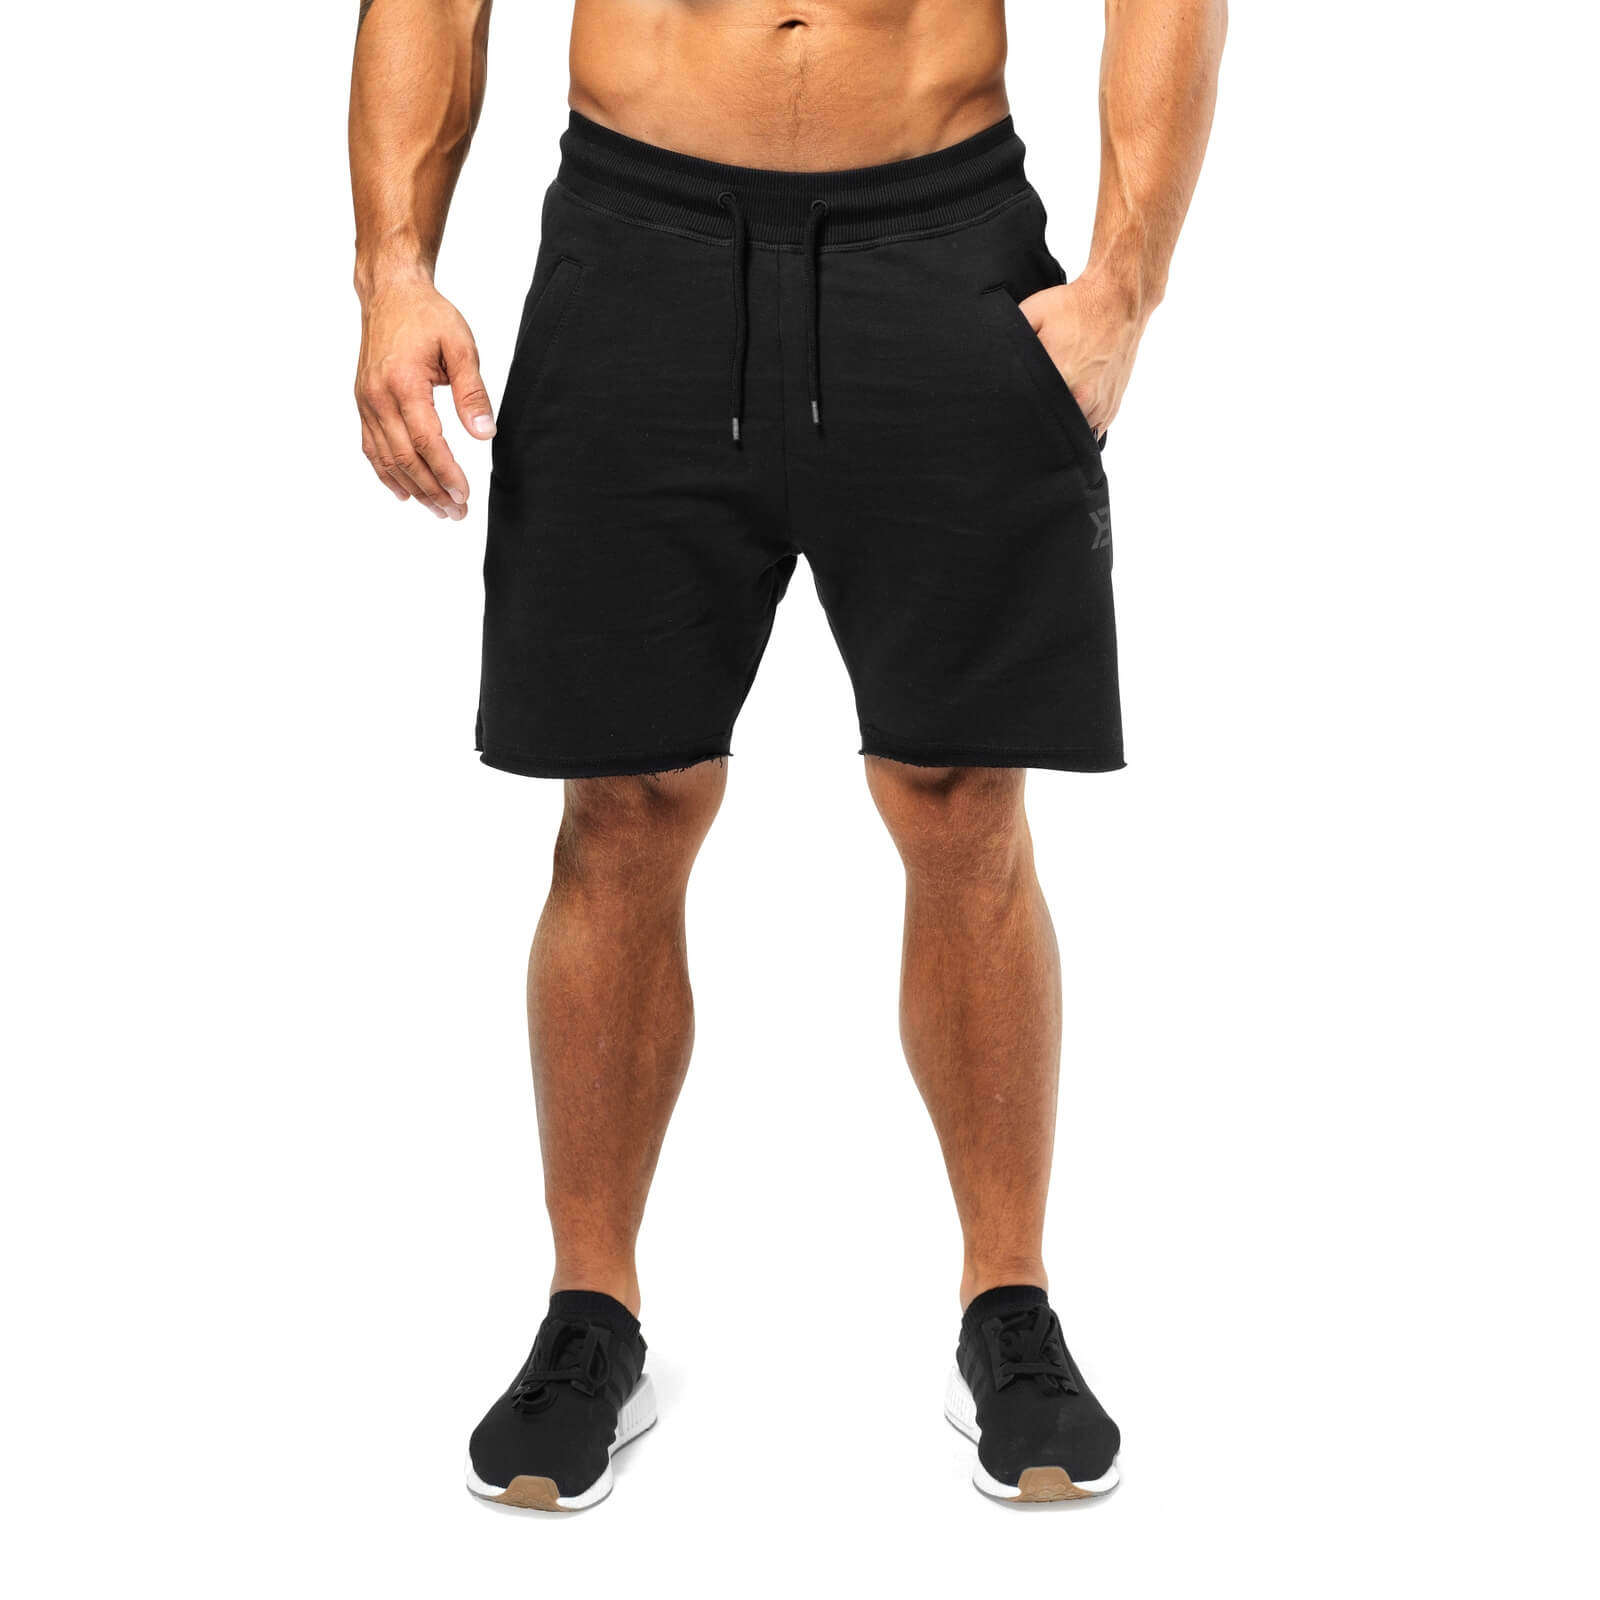 Brooklyn Gym Shorts, black, Better Bodies